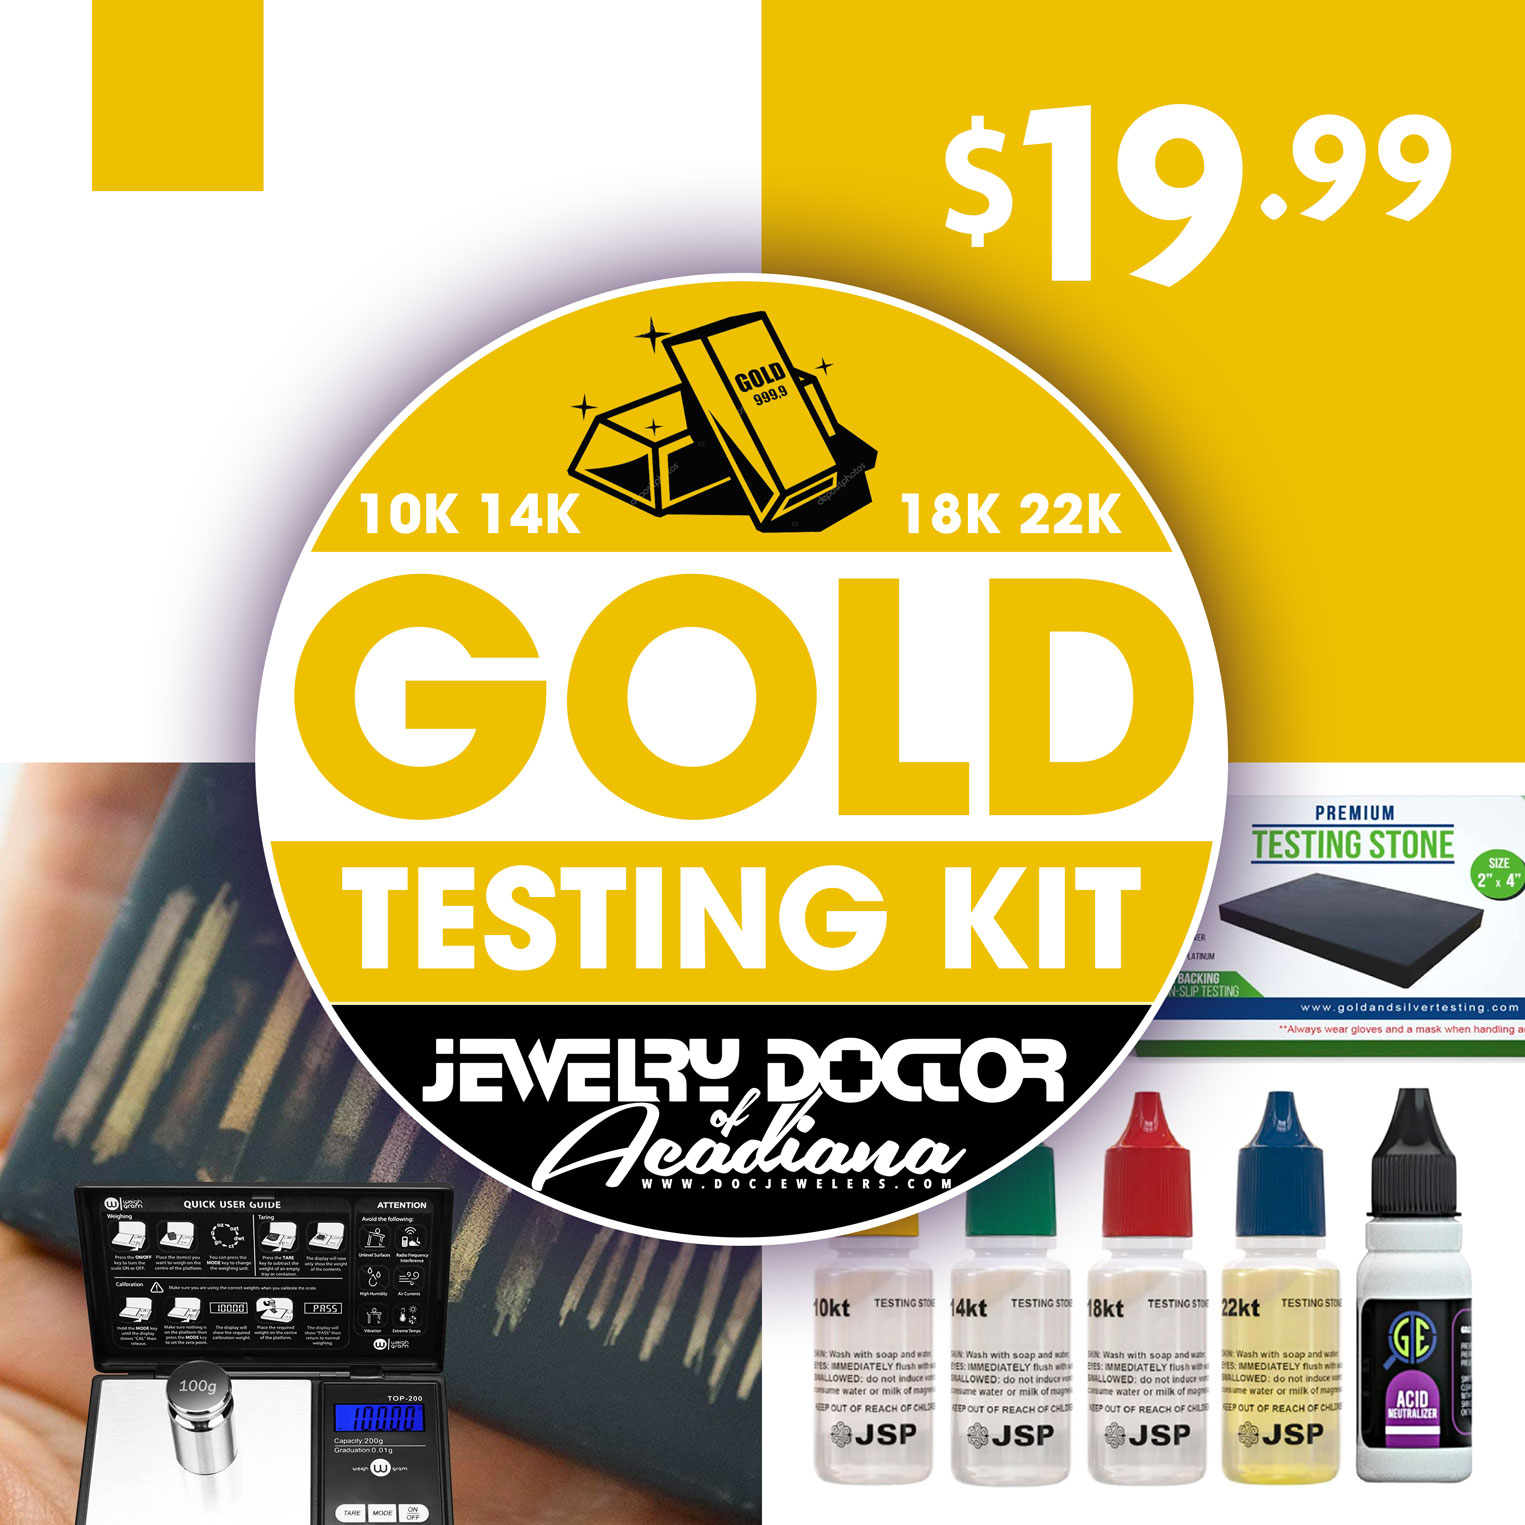 We Buy Gold Testing Kit 10k 14k 18 22k – Harold Edwards